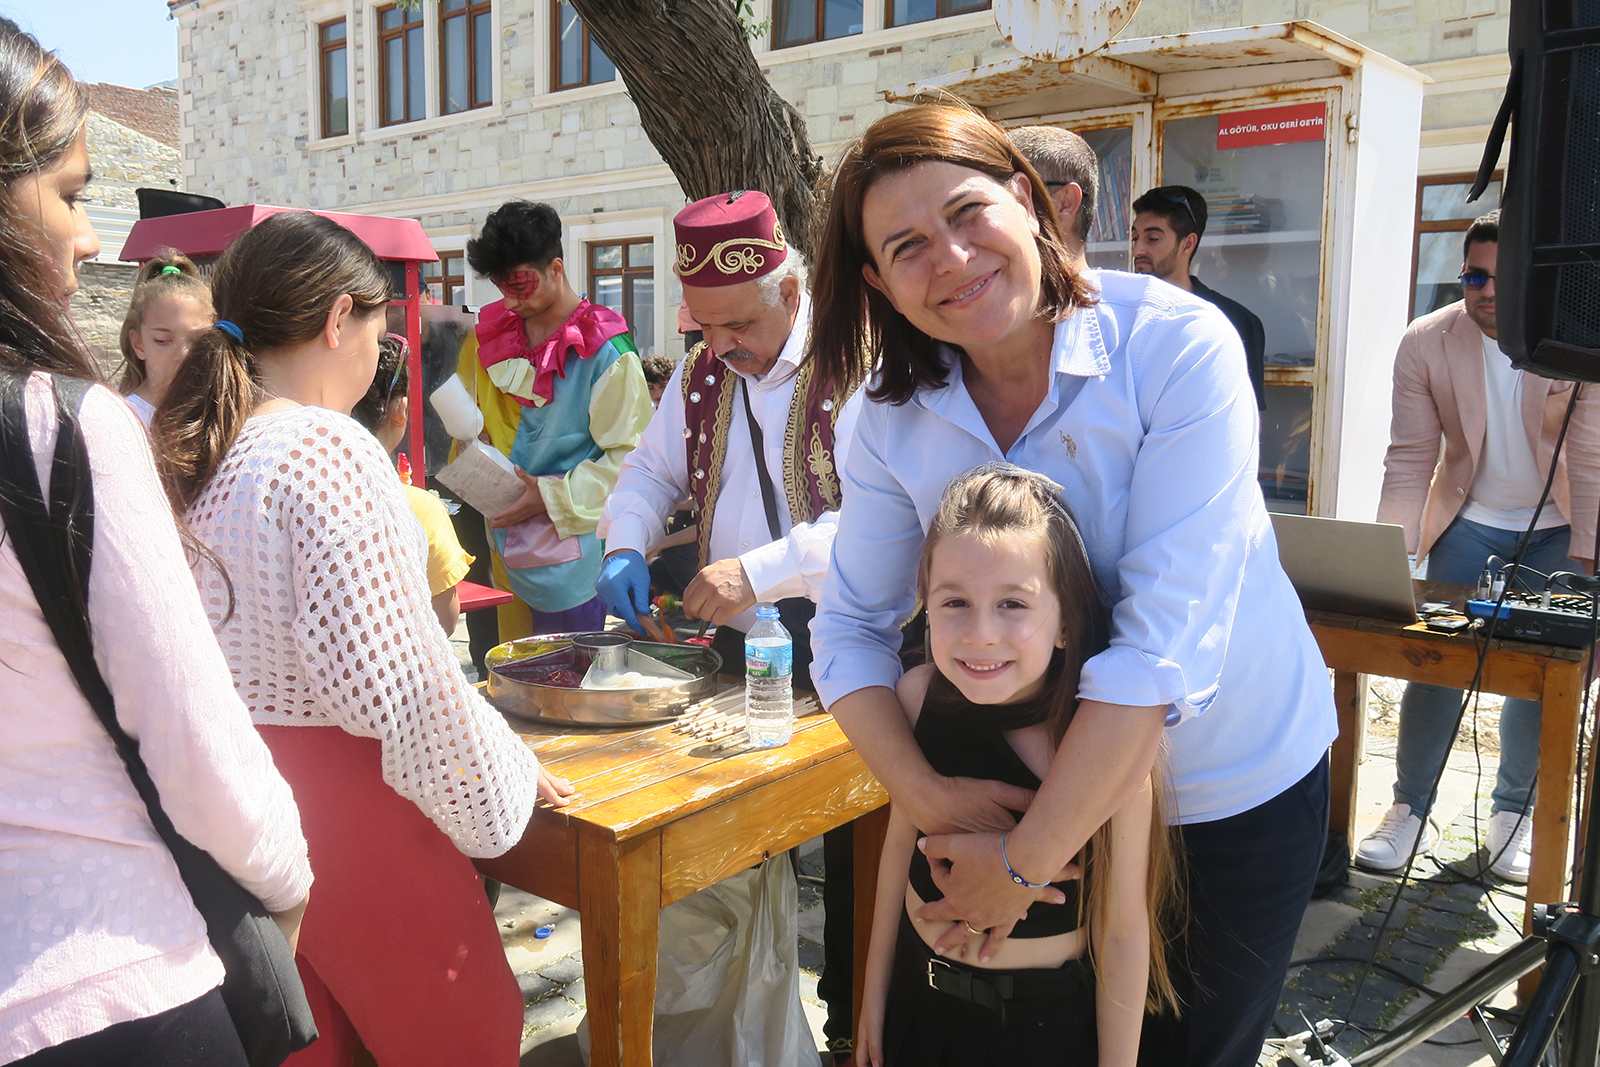 Foça Belediyesi Foça Belediyesi, 23 Nisan Ulusal Egemenlik ve Çocuk Bayramı haftası kapsamında, Foça ve Yenifoça’da Çocuk Buluşmaları gerçekleştirdi.